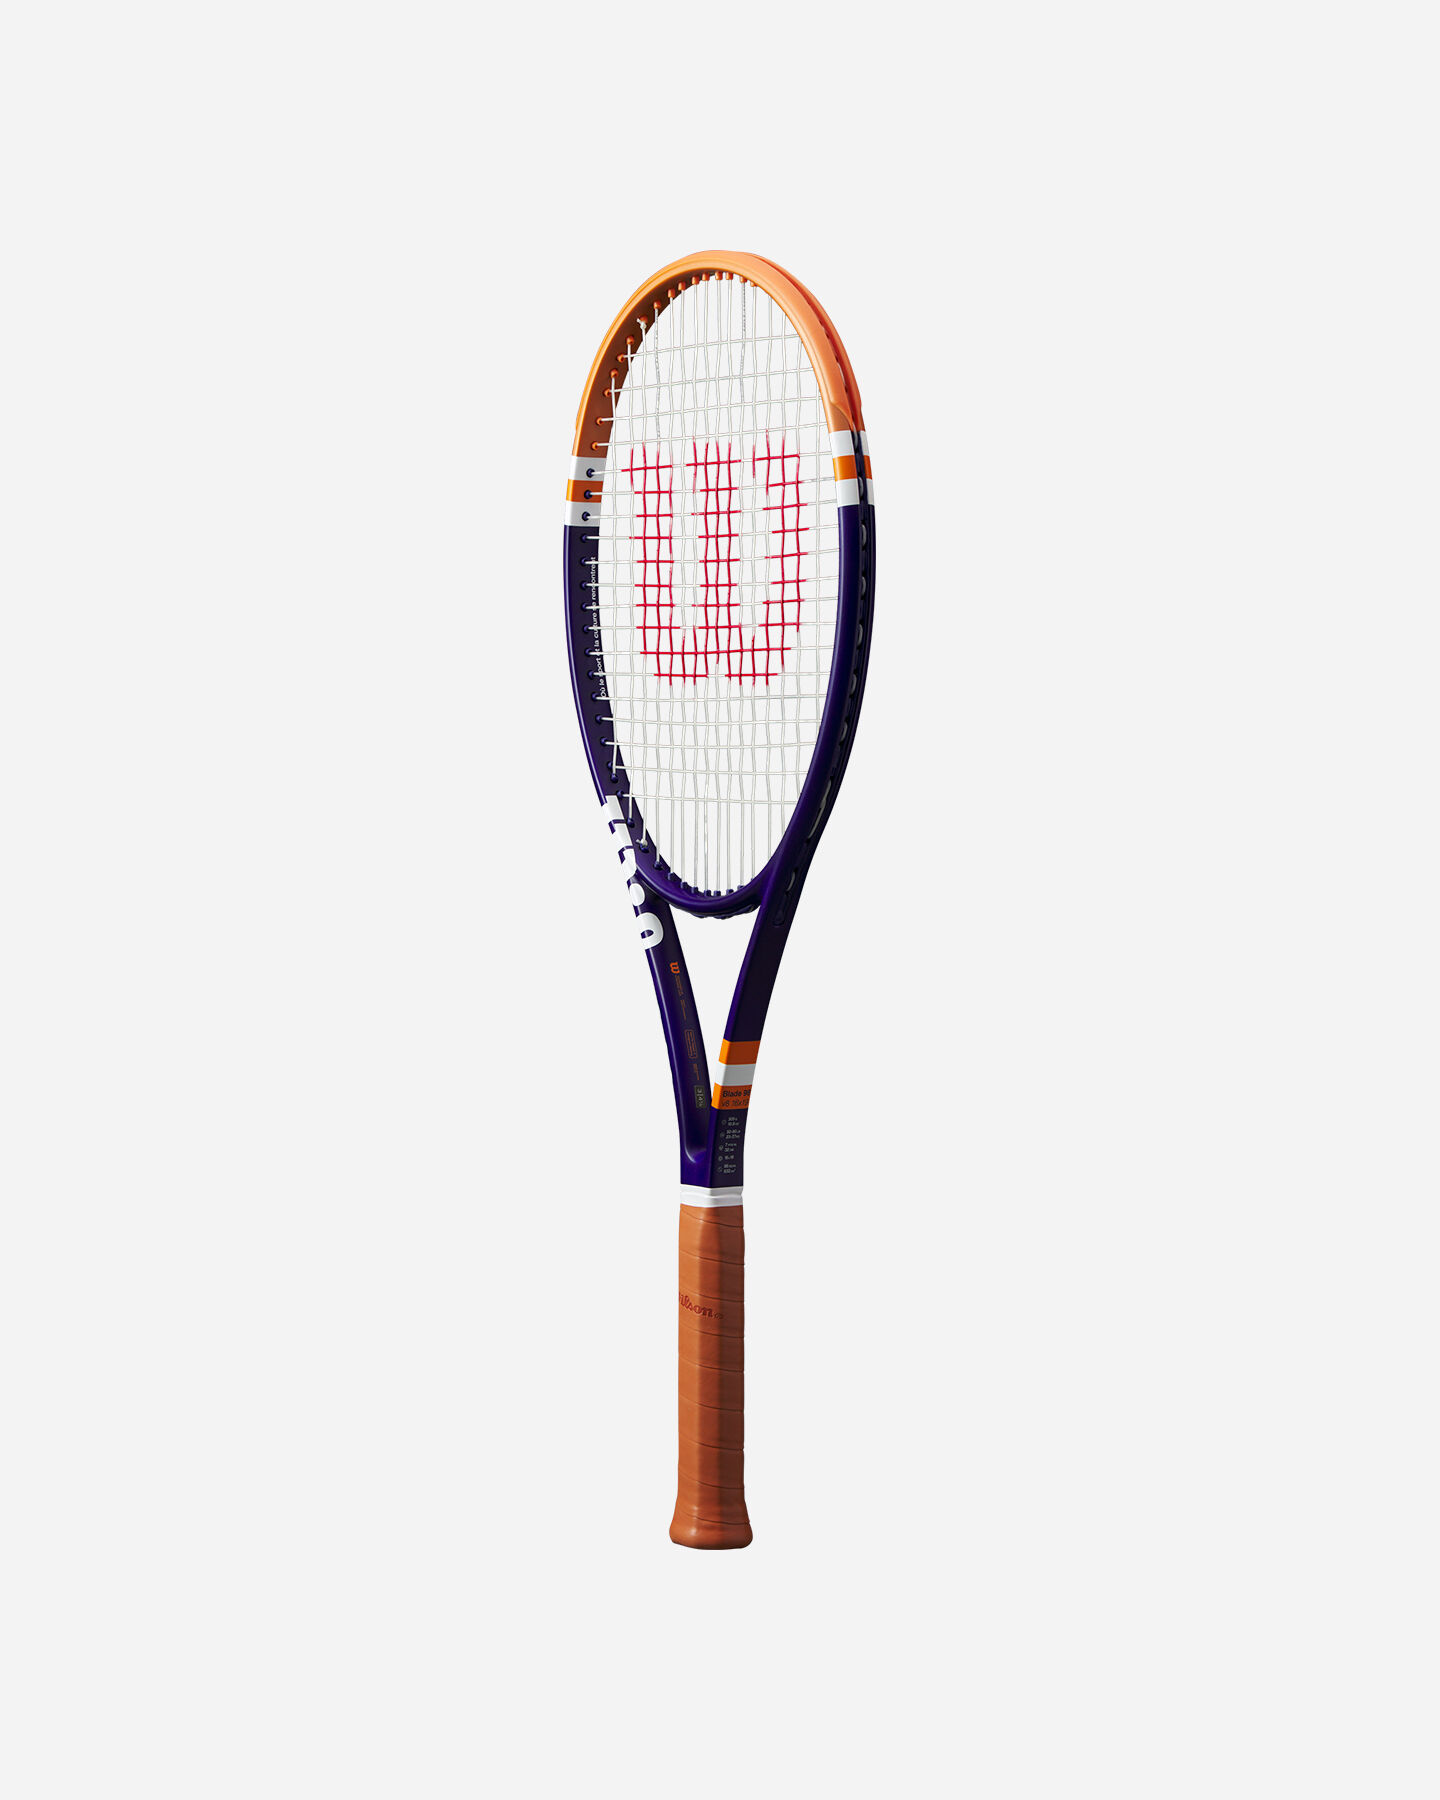  Racchetta tennis WILSON BLADE 98 V8 ROLAND GARROS 2  S5572704|UNI|0 scatto 2